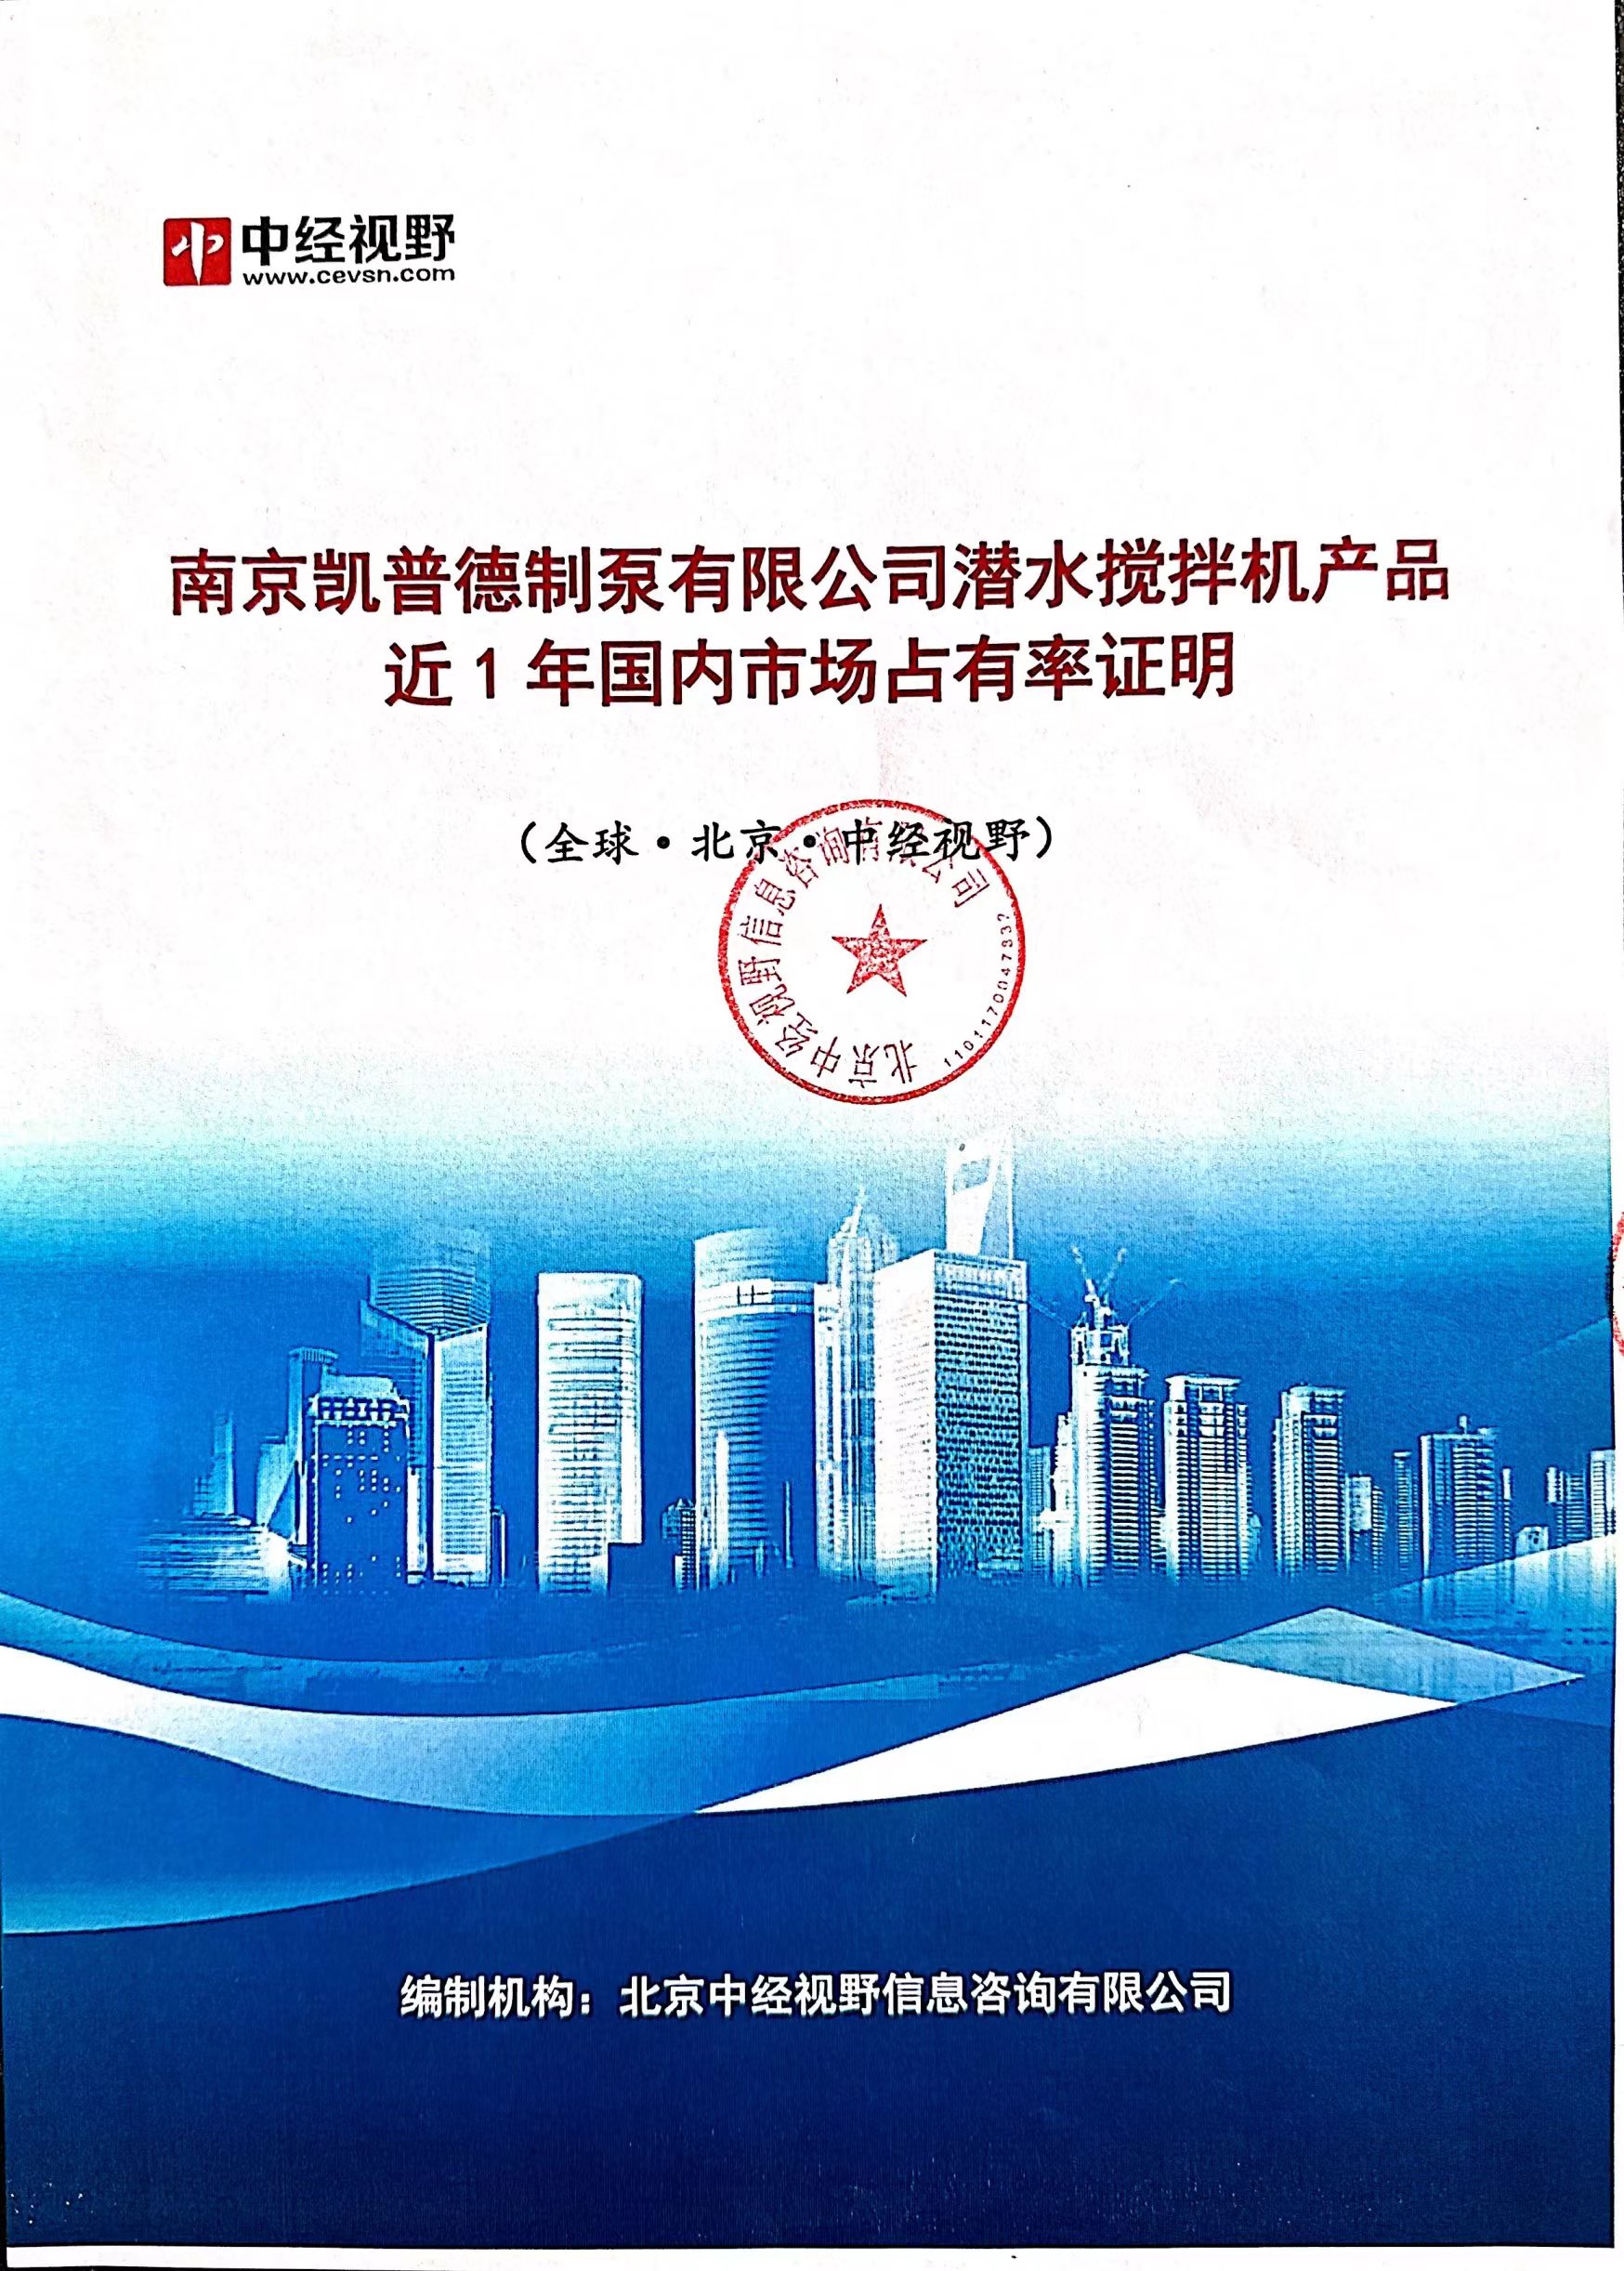 南京凯普德制泵有限公司潜水搅拌机产品2021年国内市场占有率名列前五